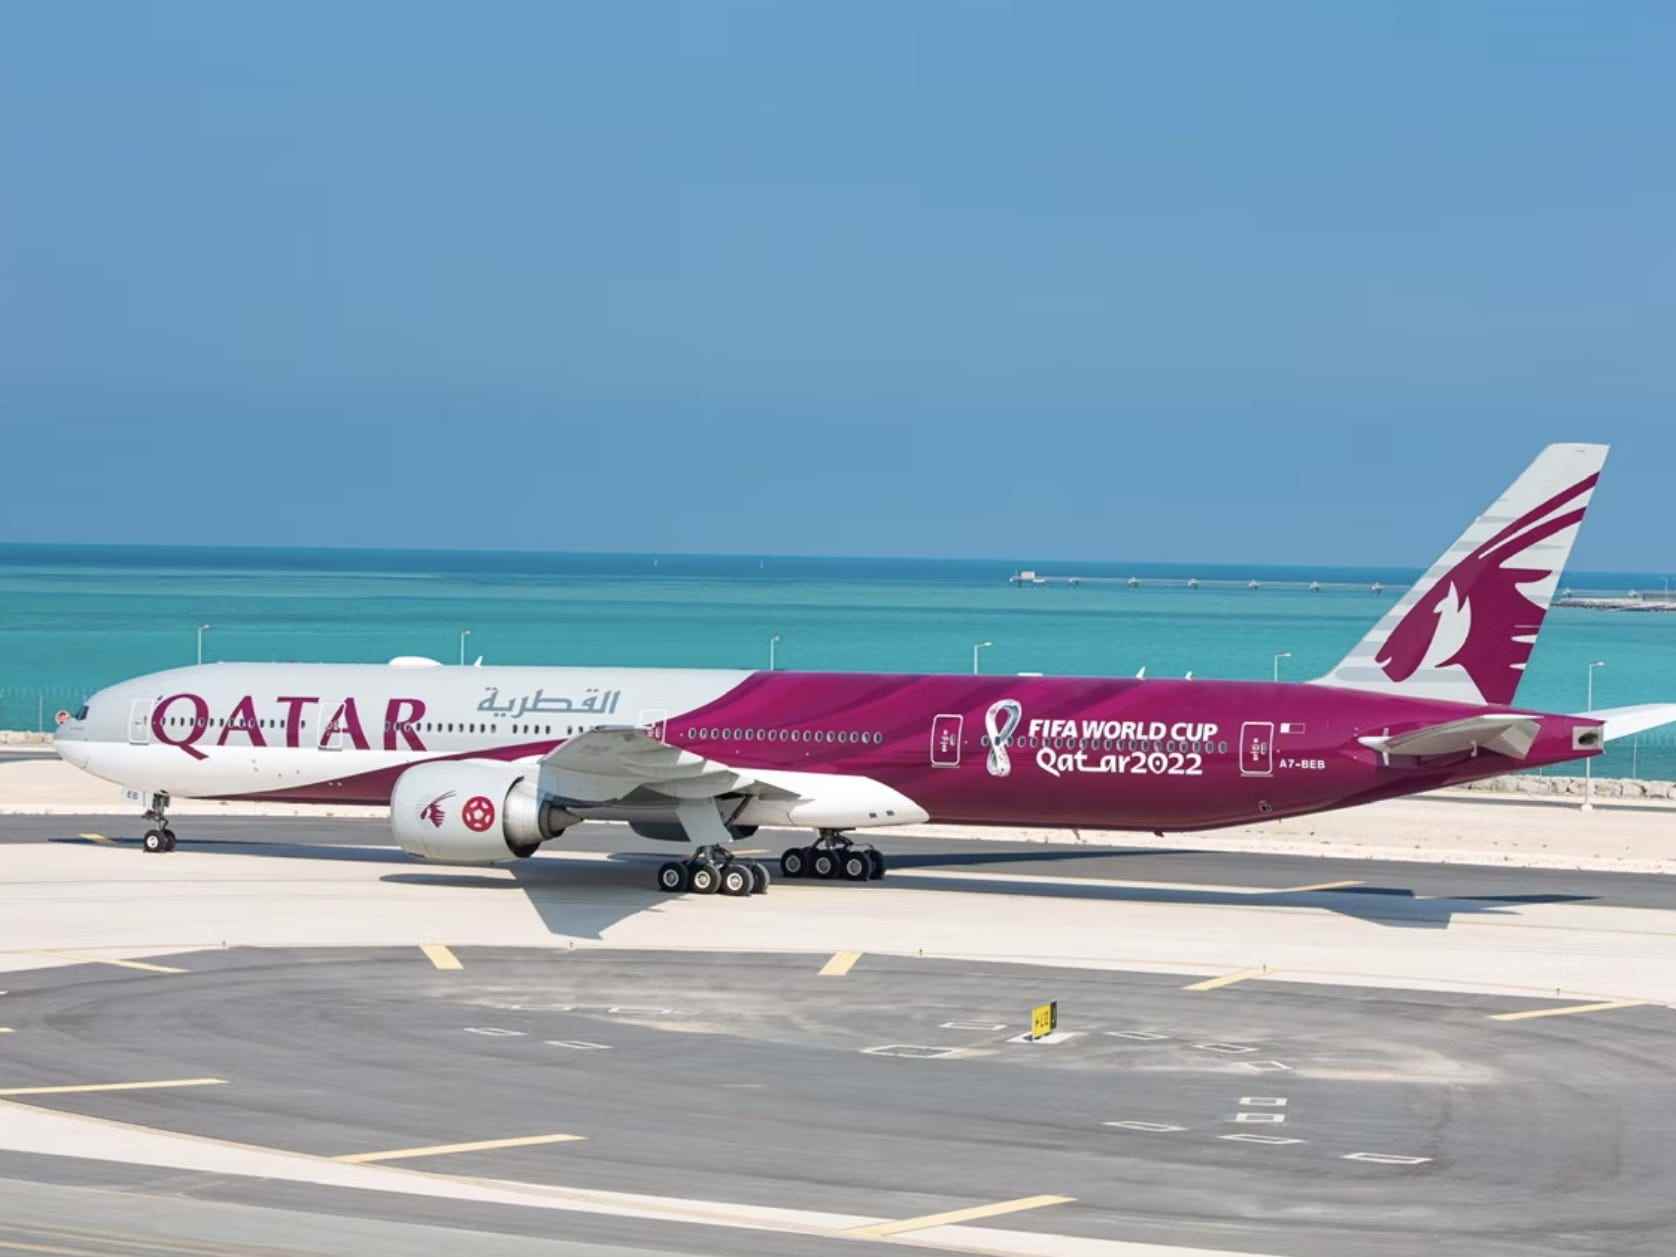 Boeing 777 von Qatar Airways in FIFA-Sonderlackierung.